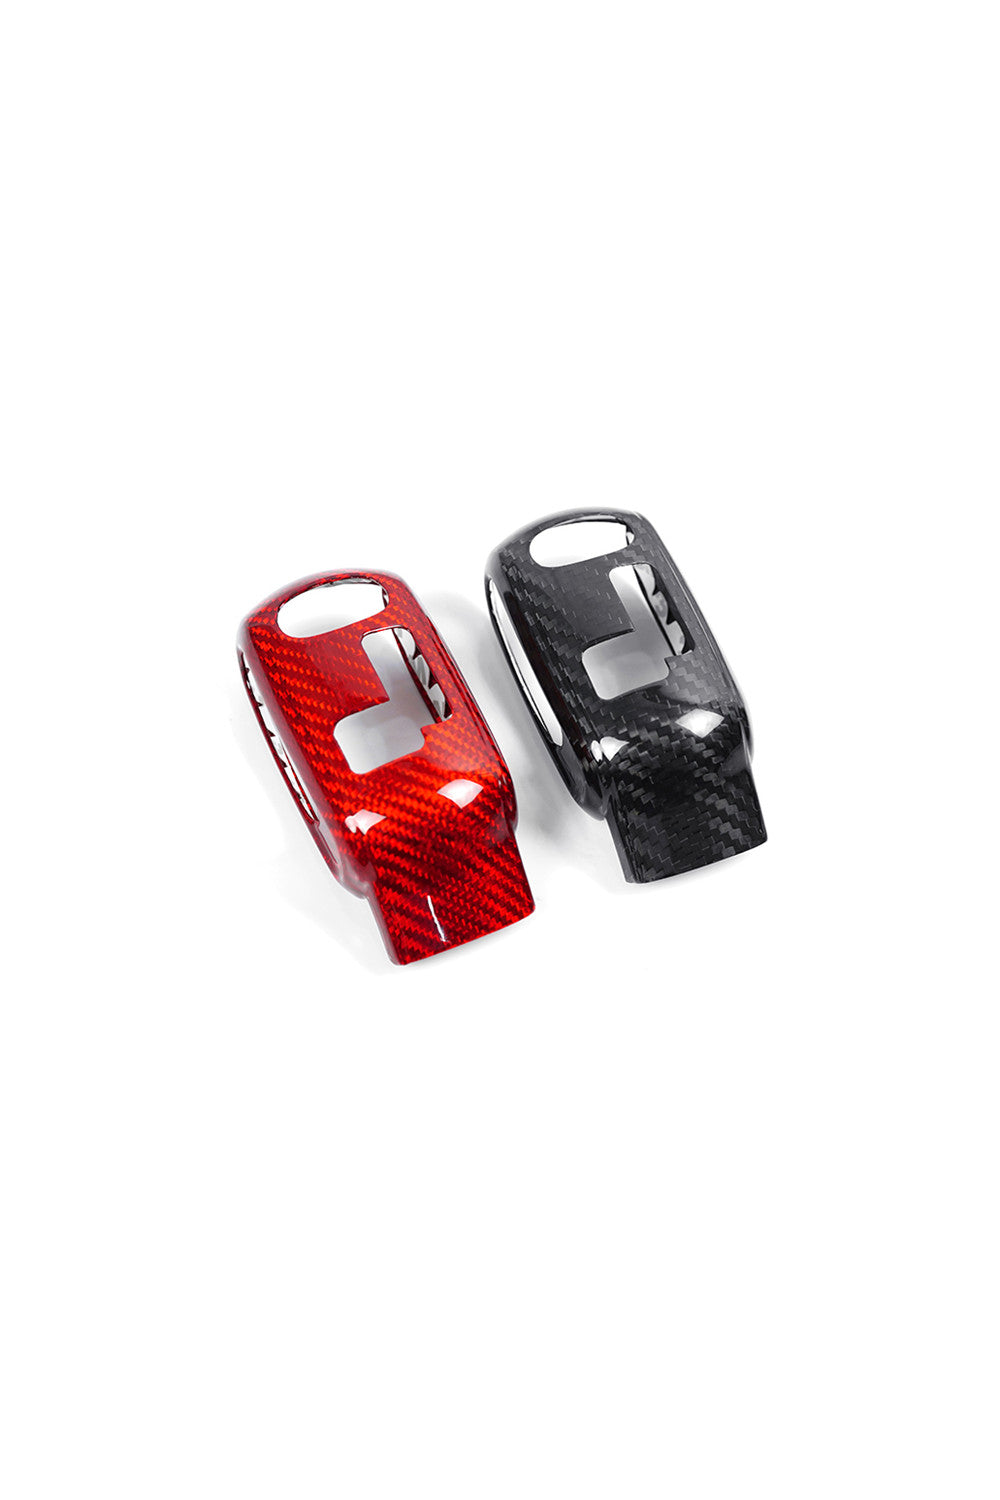  Para Mini Cooper F56 F55 F57 Auto Parts Red Carbon Fiber  Central Control Encendedor Cubierta Protectora Cubierta Cubierta Interior  Accesorios : Automotriz